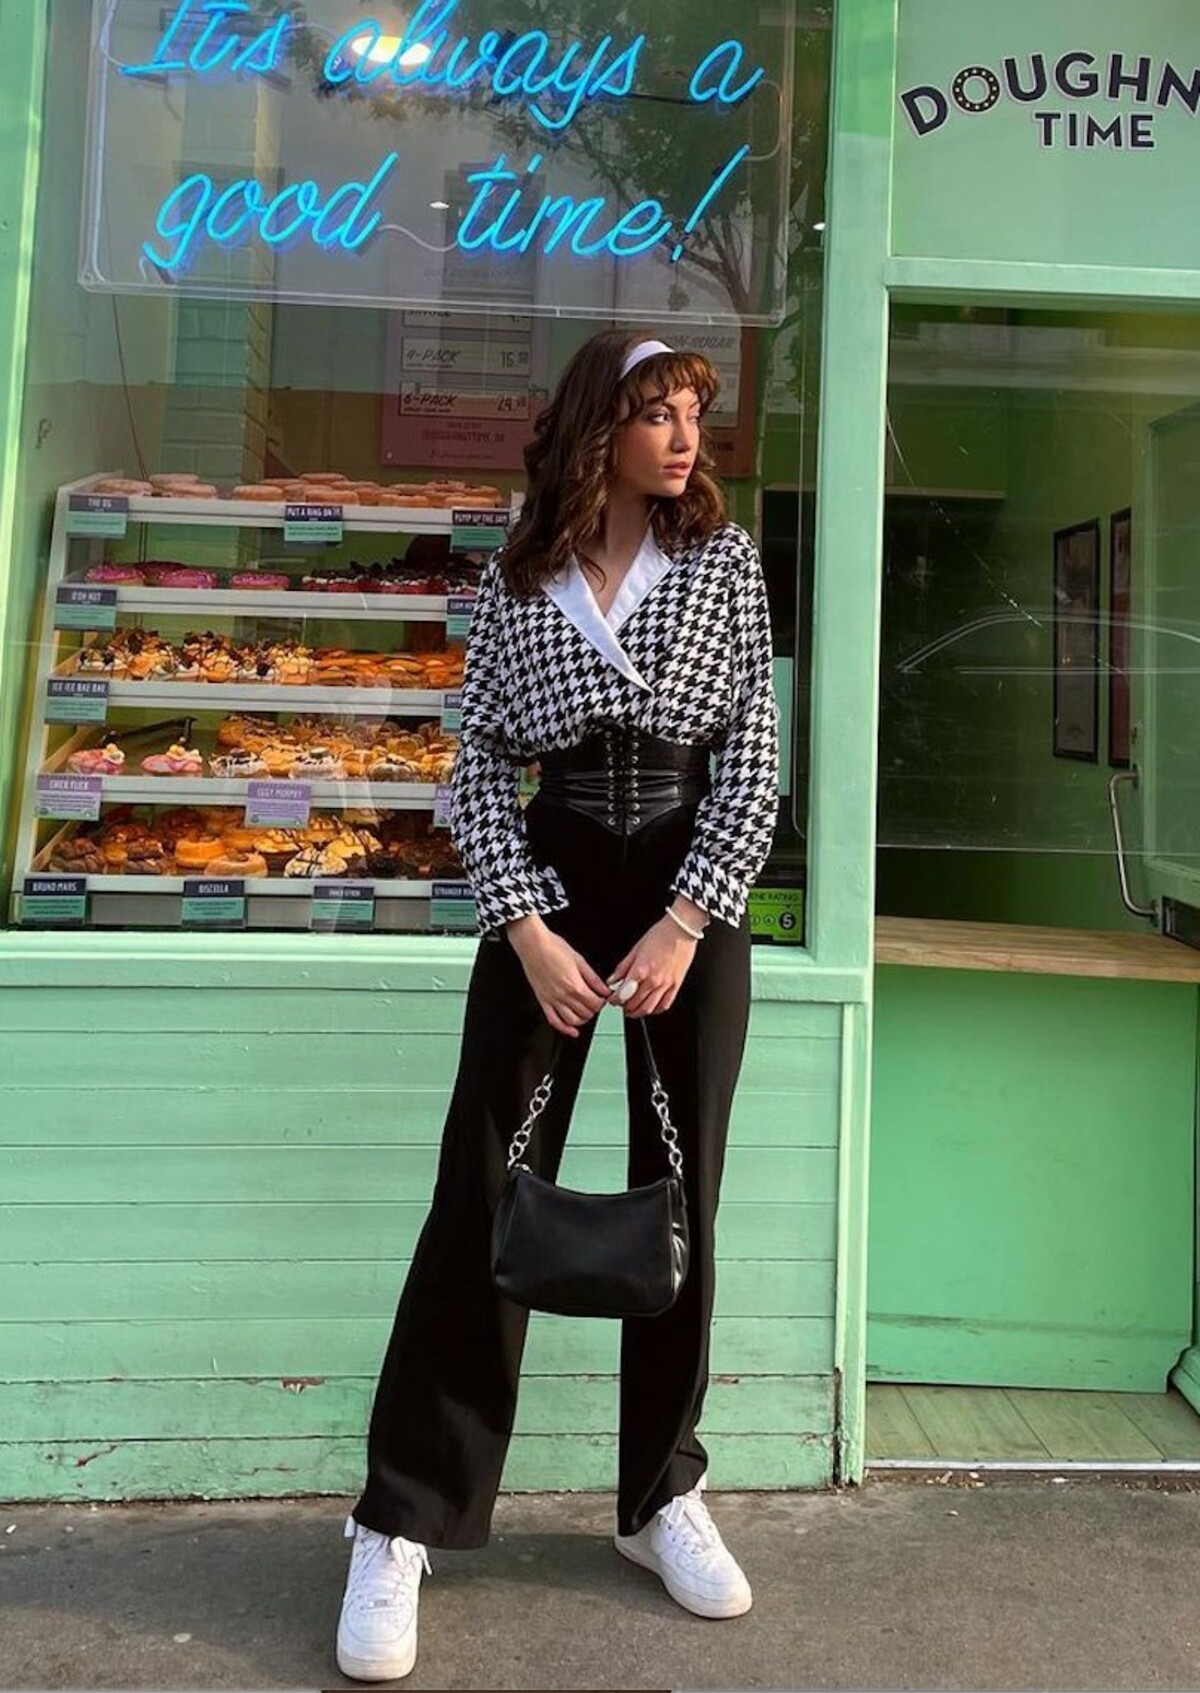 Elena Breeze miluje extravaganciu. V jej instagramovom feede či na Tiktoku nájdeš nespočetné množstvo inšpirácie na streetstylový look aj večerné outfitty.